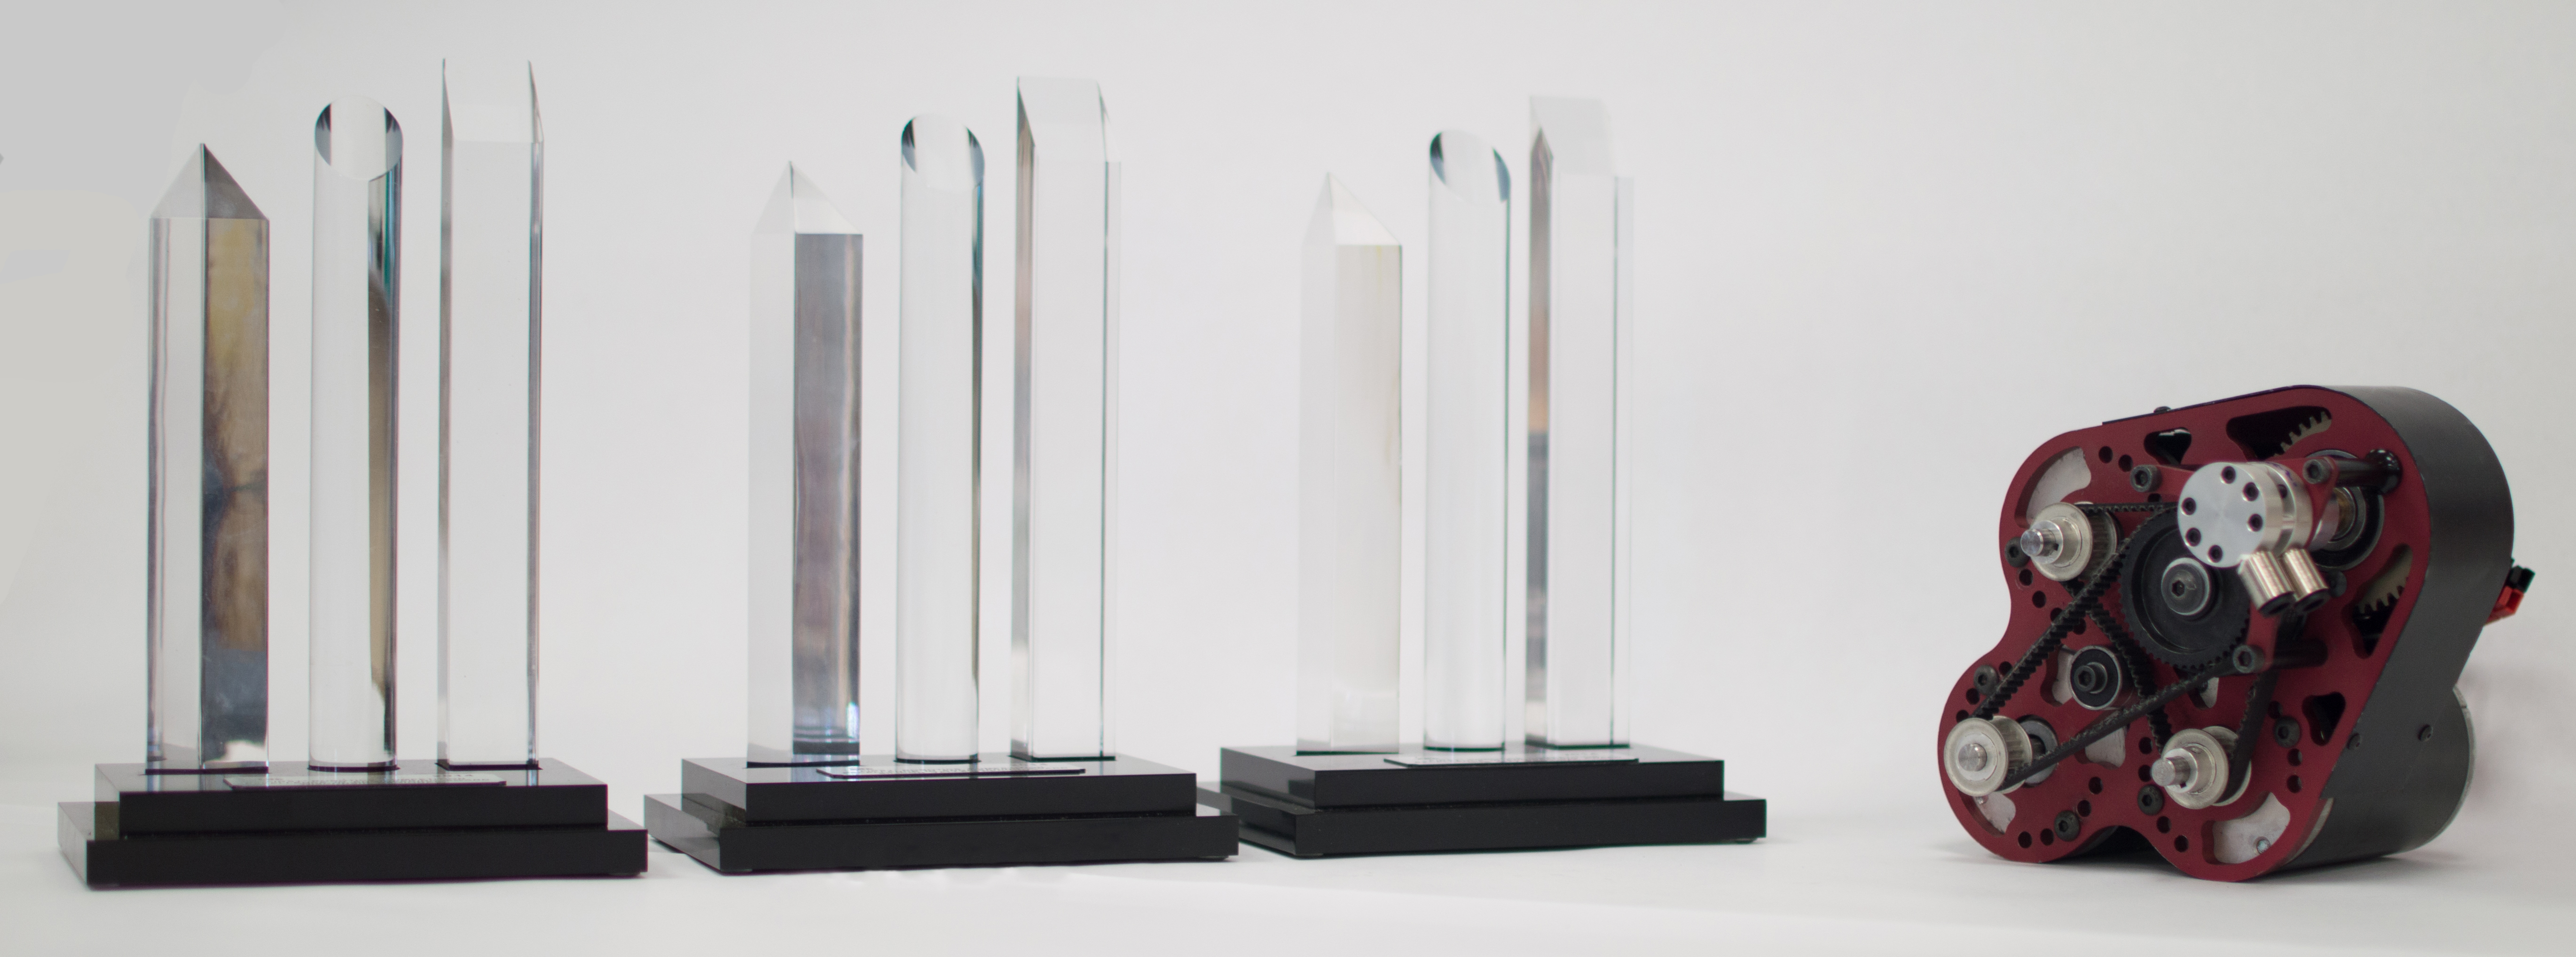 2014 awards